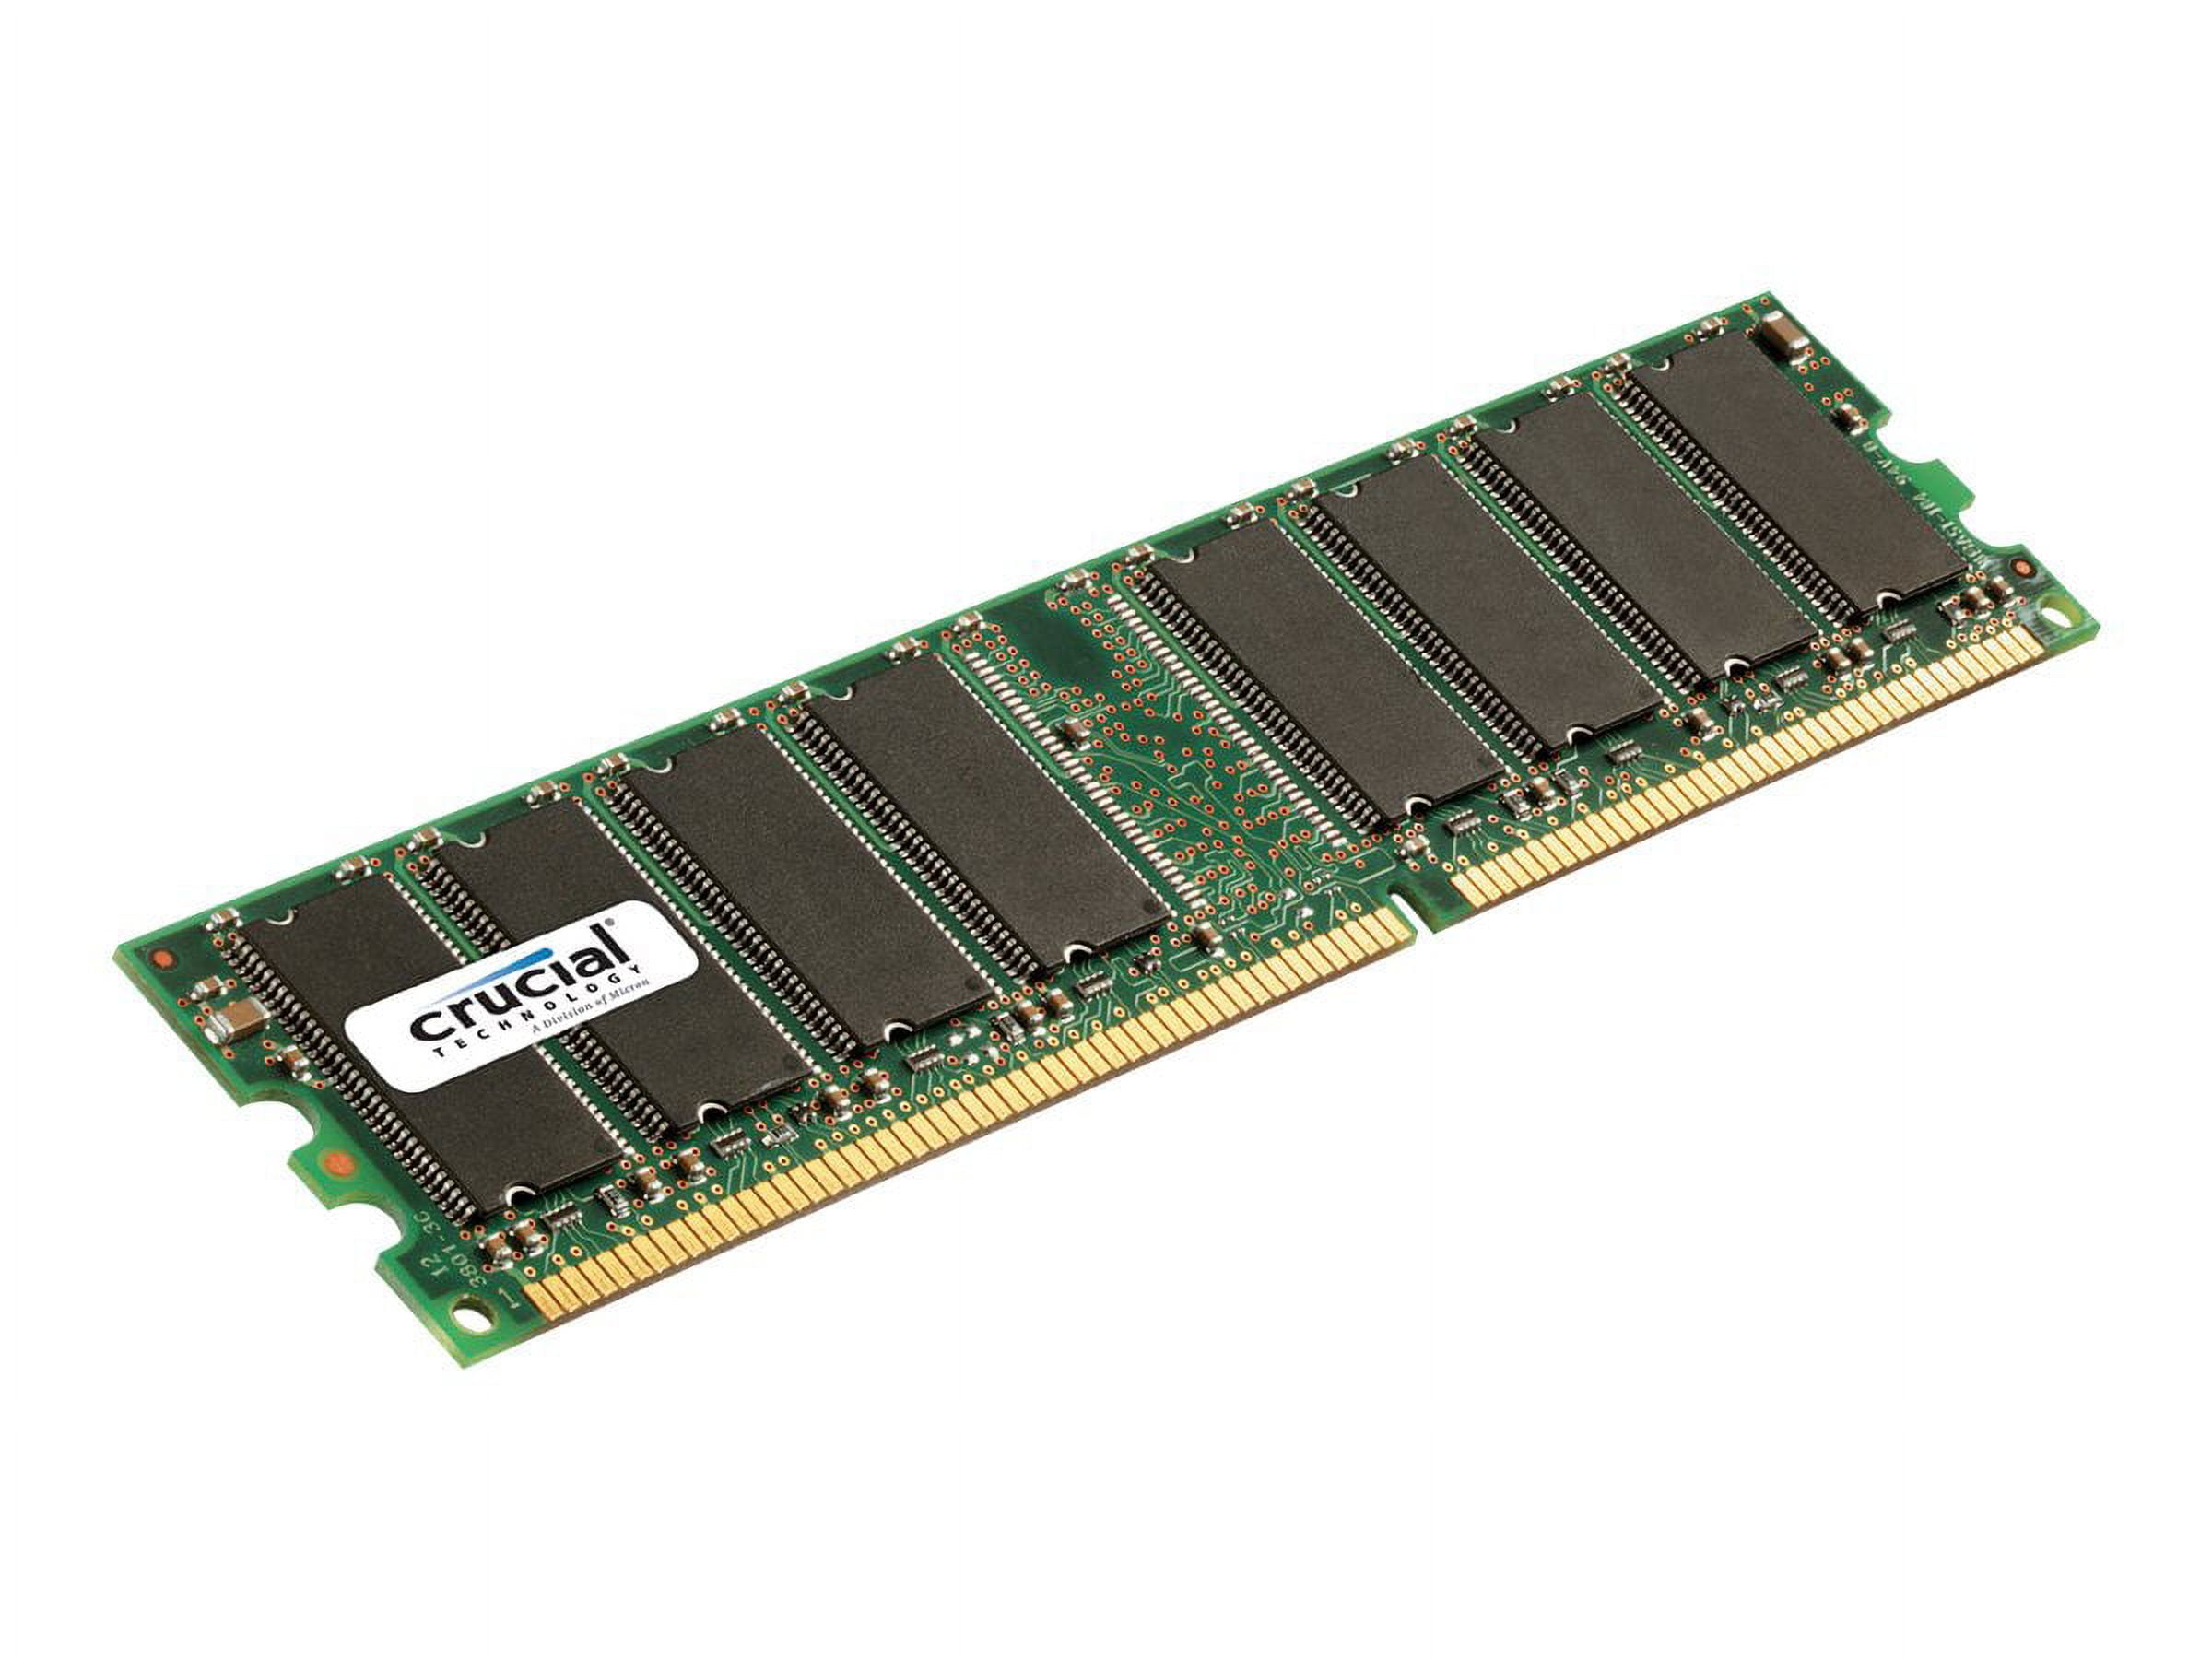 GB 400MHz DIMM memory module